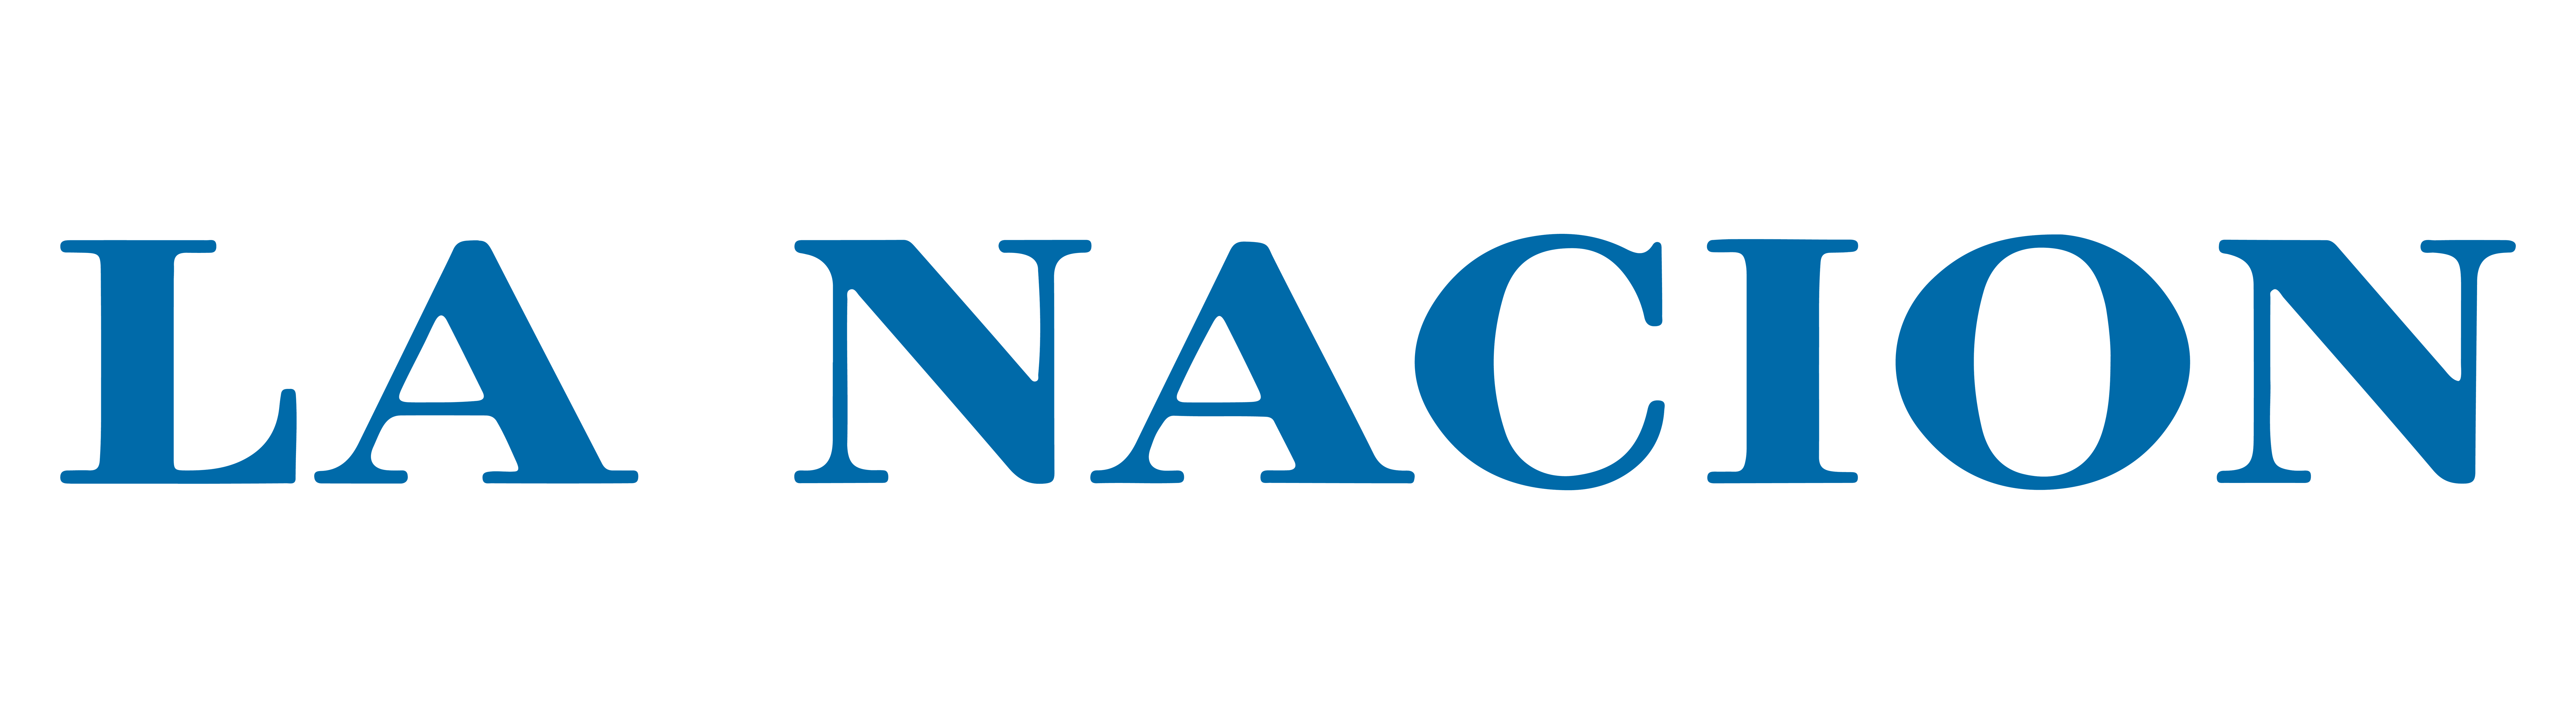 La Nacion Logo